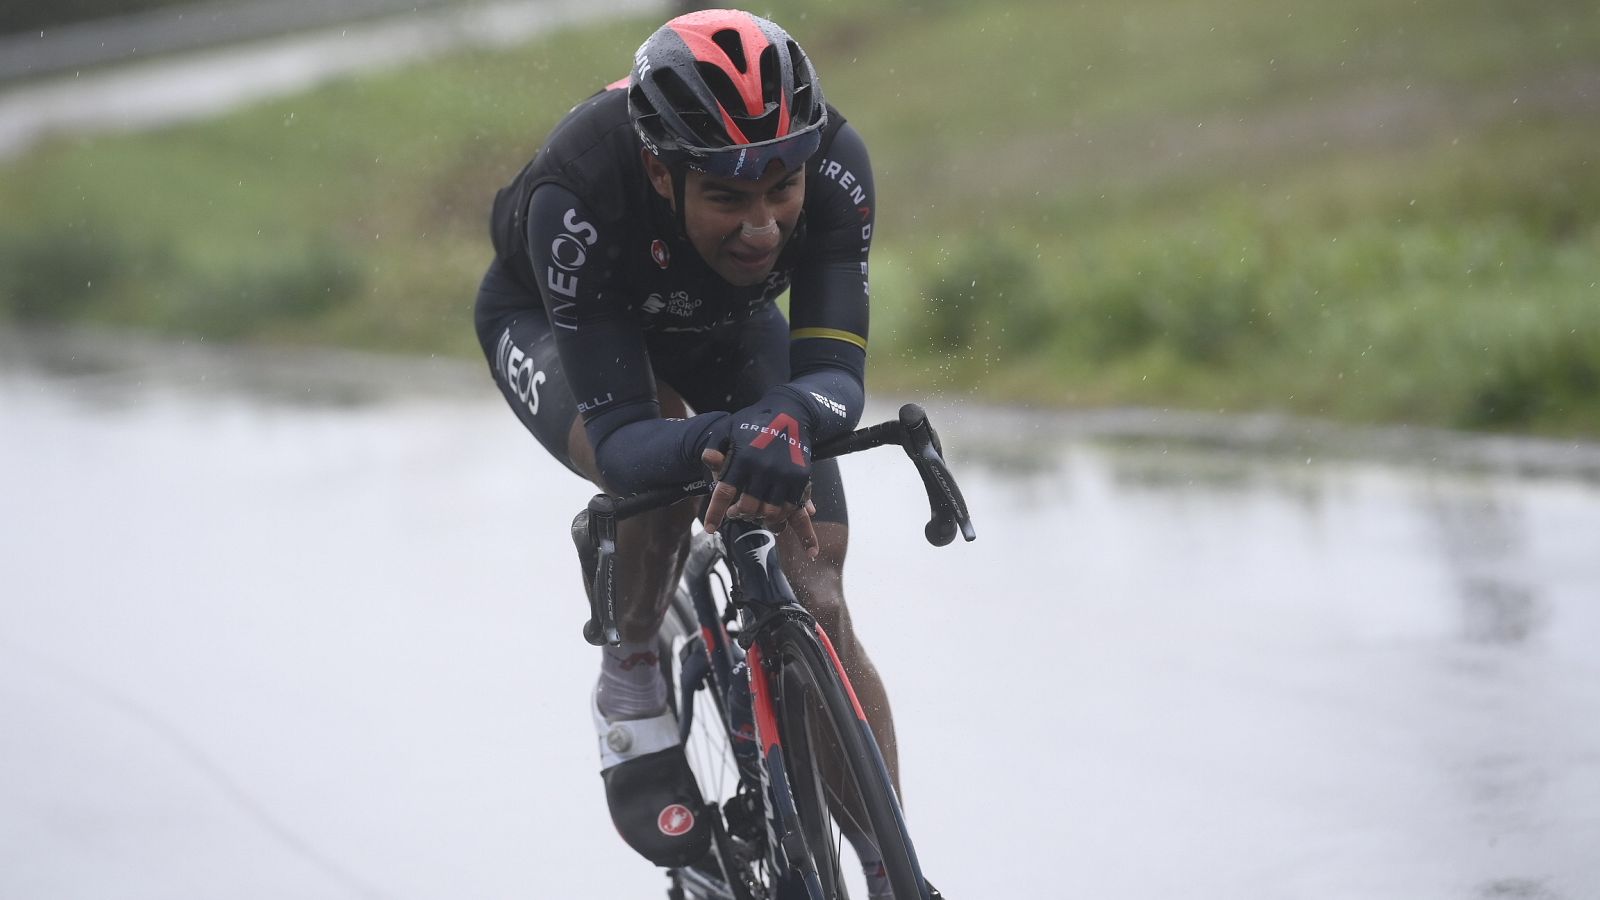 Imagen de Jhonatan Manuel Narvaez Prado (Ineos) durante la etapa 12 del Giro de Italia 2020.